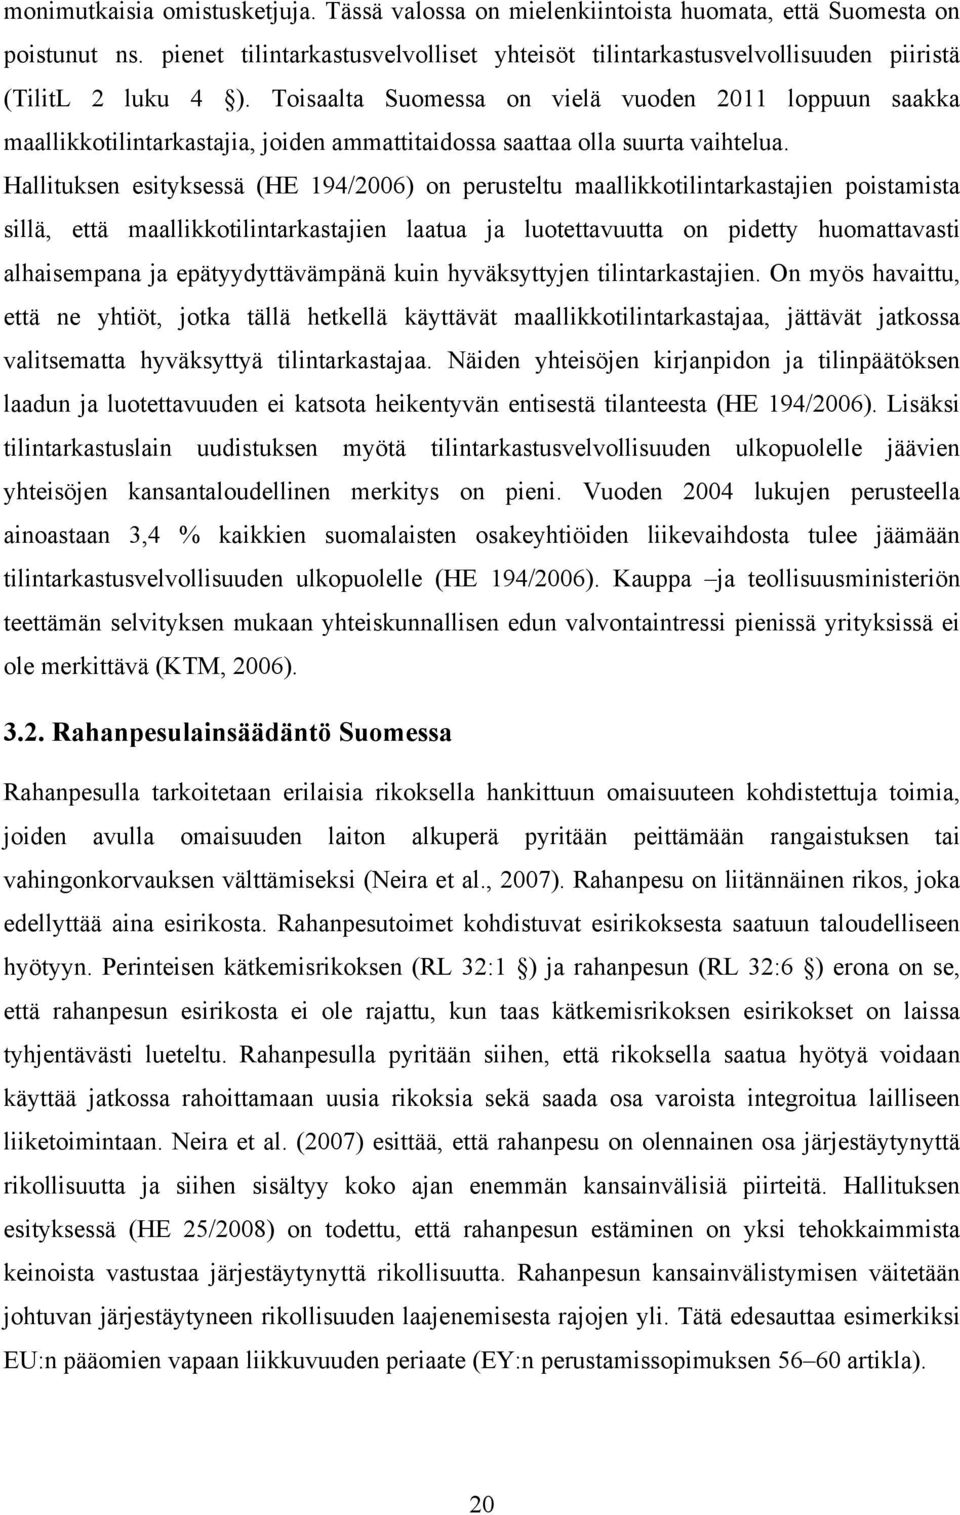 Toisaalta Suomessa on vielä vuoden 2011 loppuun saakka maallikkotilintarkastajia, joiden ammattitaidossa saattaa olla suurta vaihtelua.